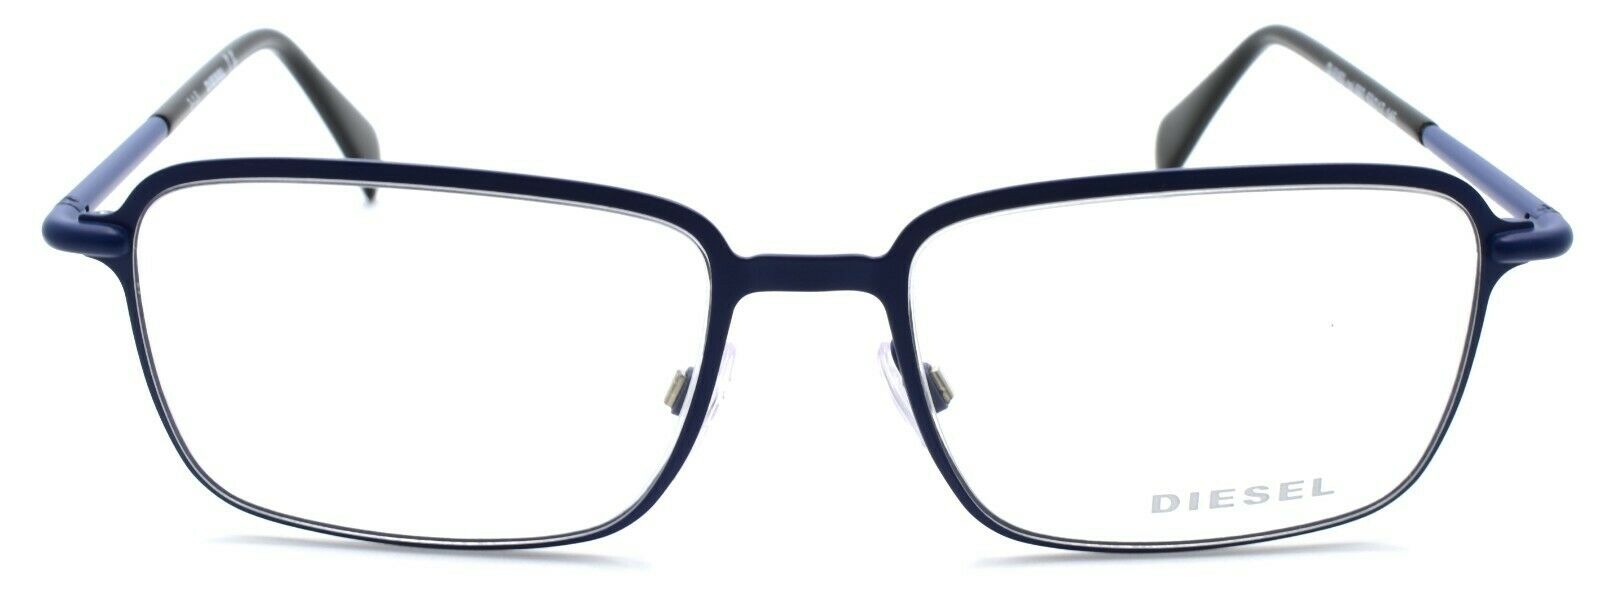 2-Diesel DL5163 092 Men's Eyeglasses Frames 53-17-145 Matte Blue-664689708420-IKSpecs